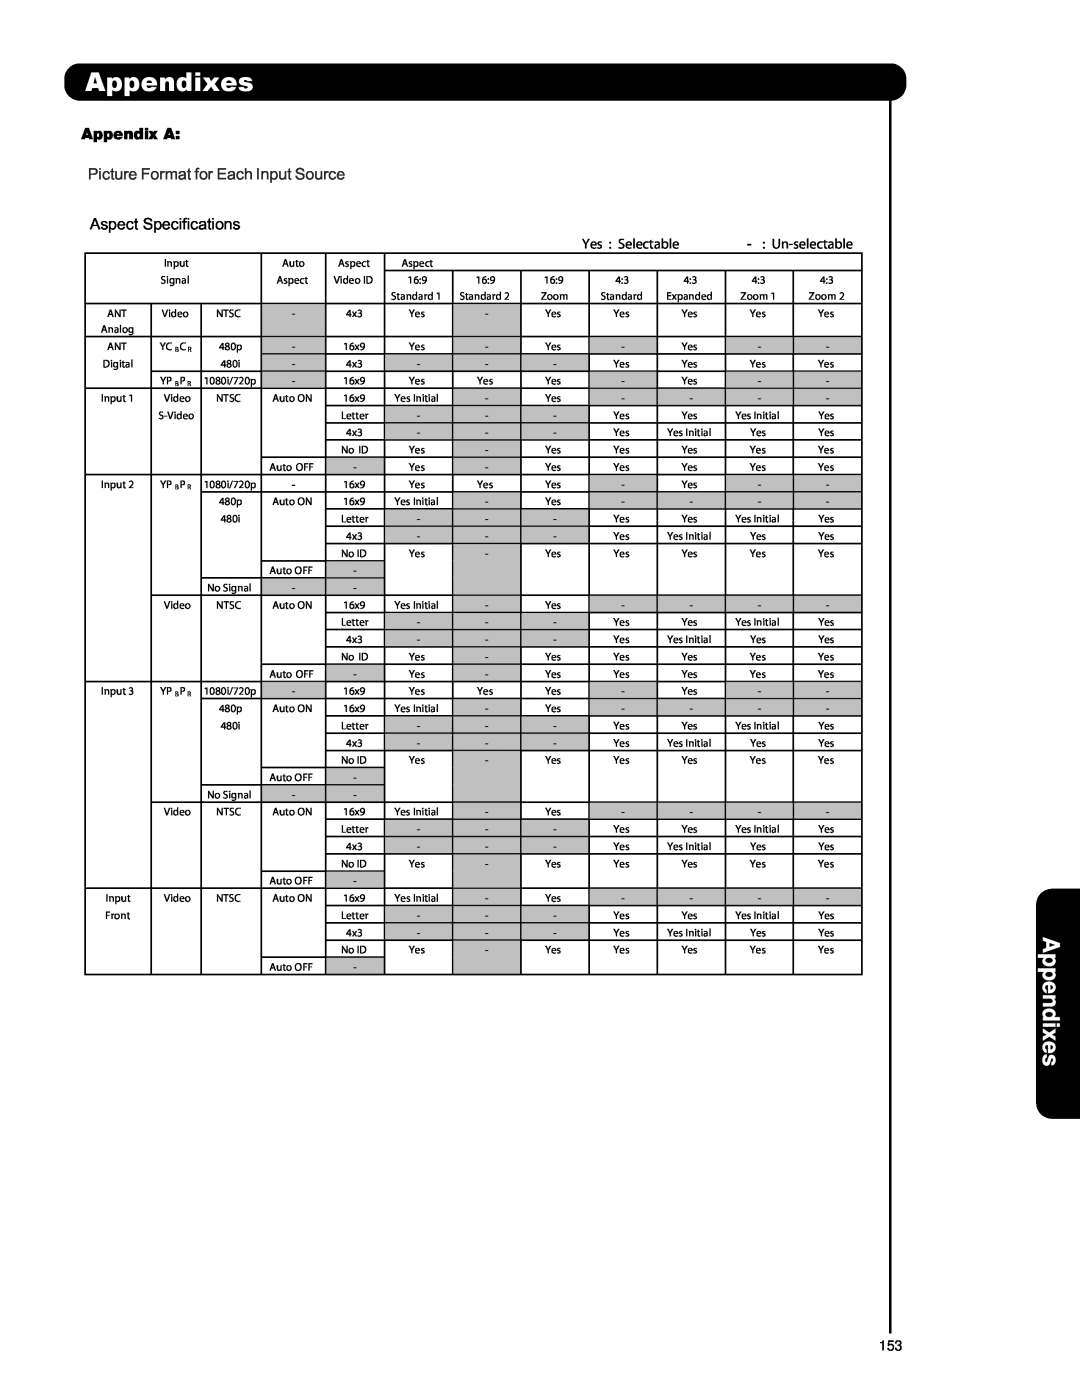 Hitachi P42T501, P55T551, P50T501A Appendixes, Appendix A, Picture Format for Each Input Source, Un-selectable 